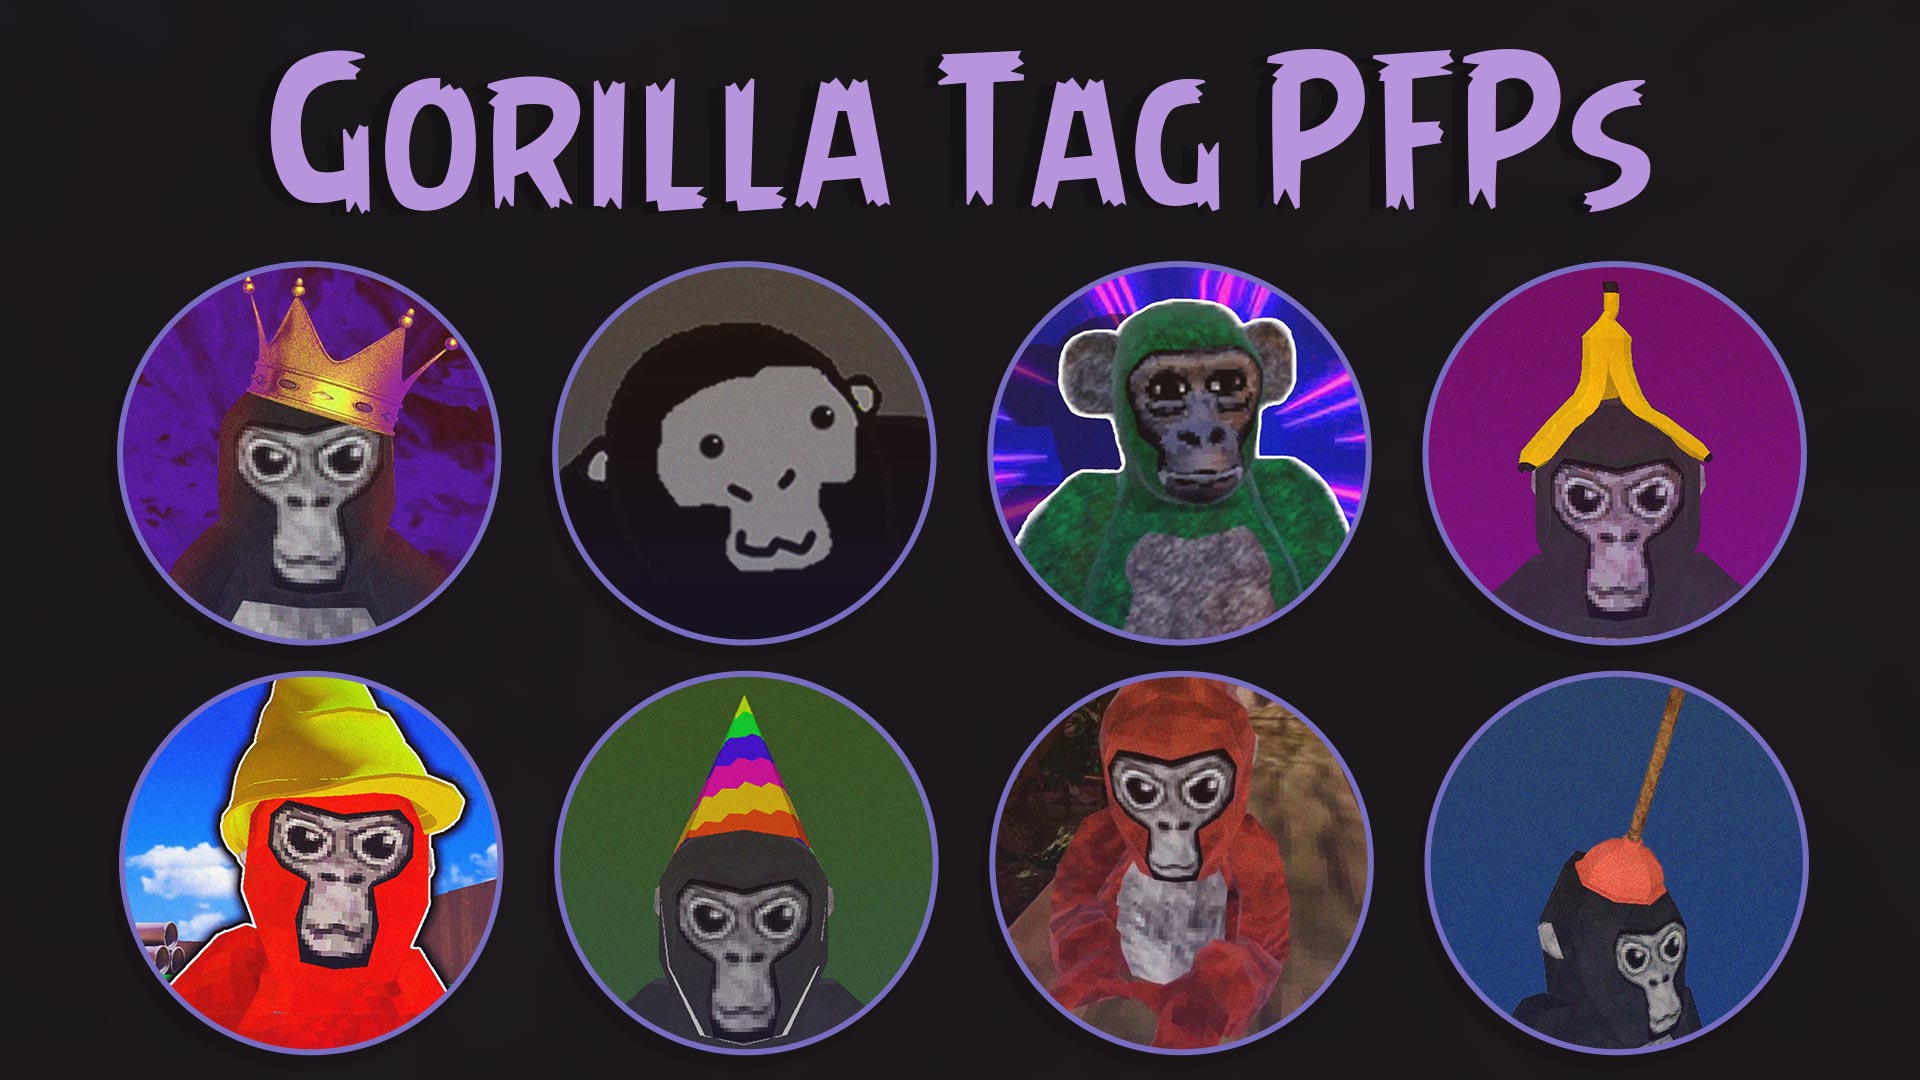 gorilla tag pfps